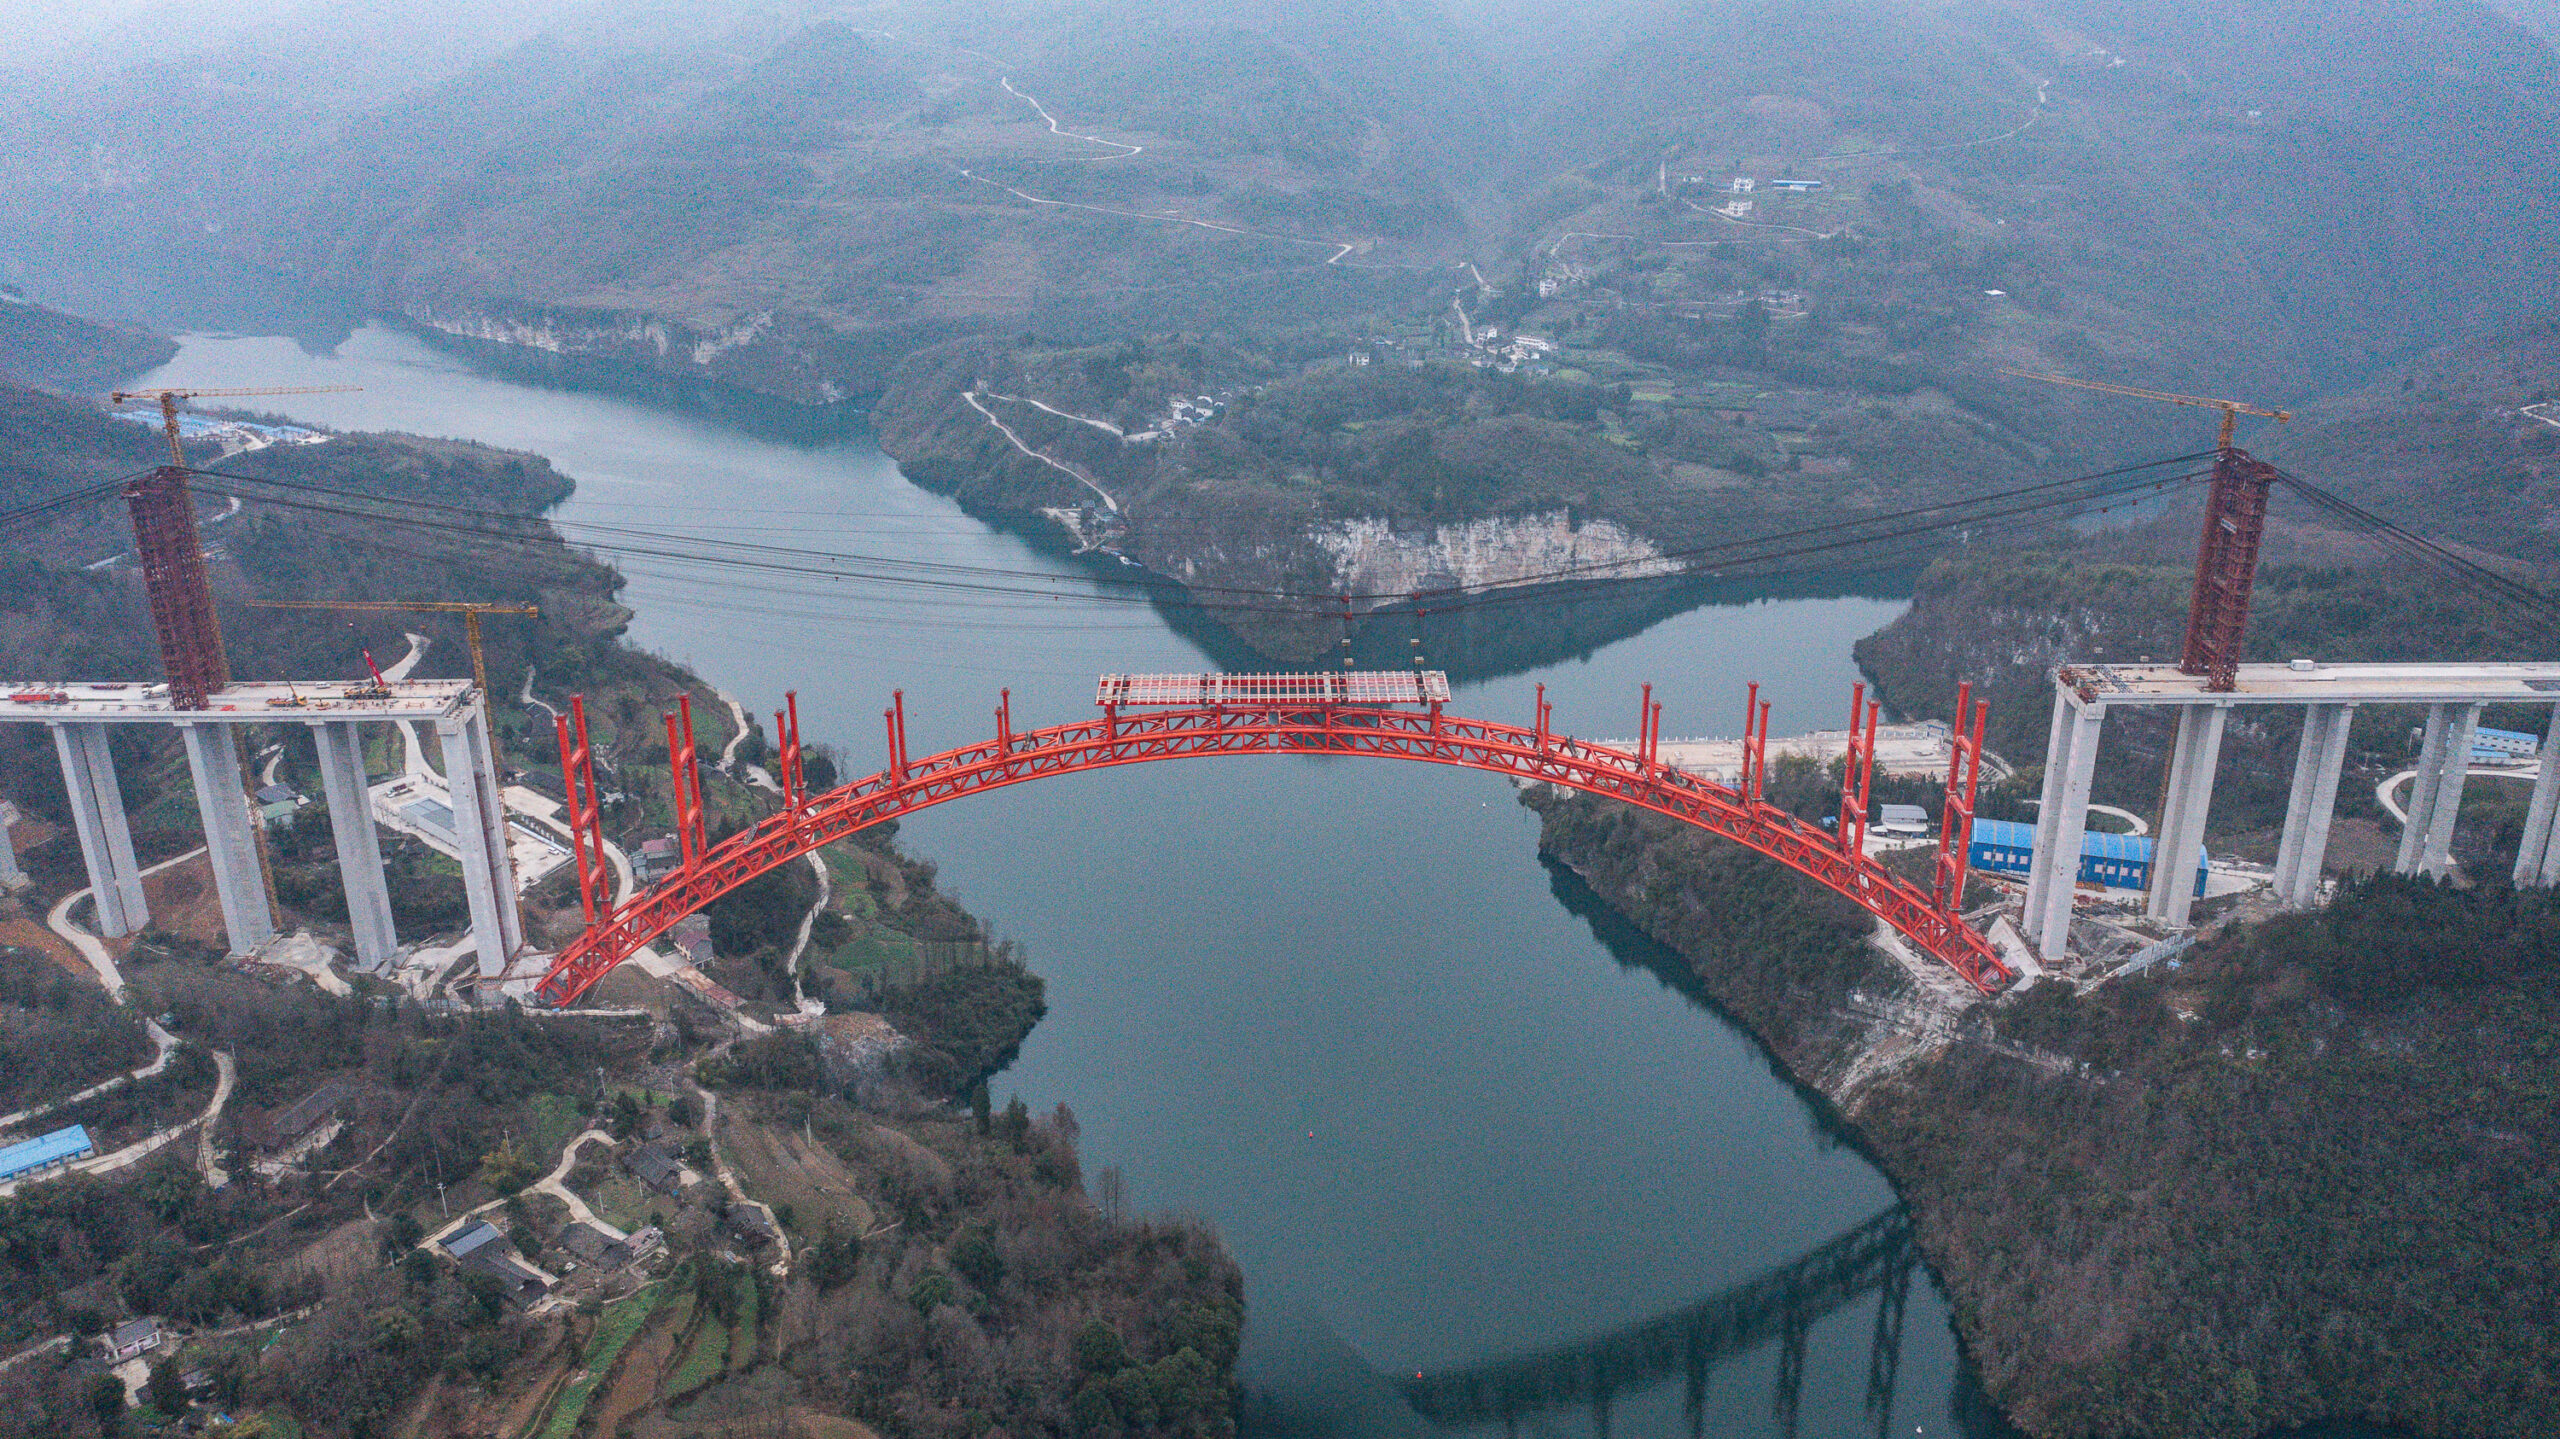 ส่องงานสร้าง 'สะพานใหญ่อูเจียง' ส่วนหลักทางด่วนในกุ้ยโจว